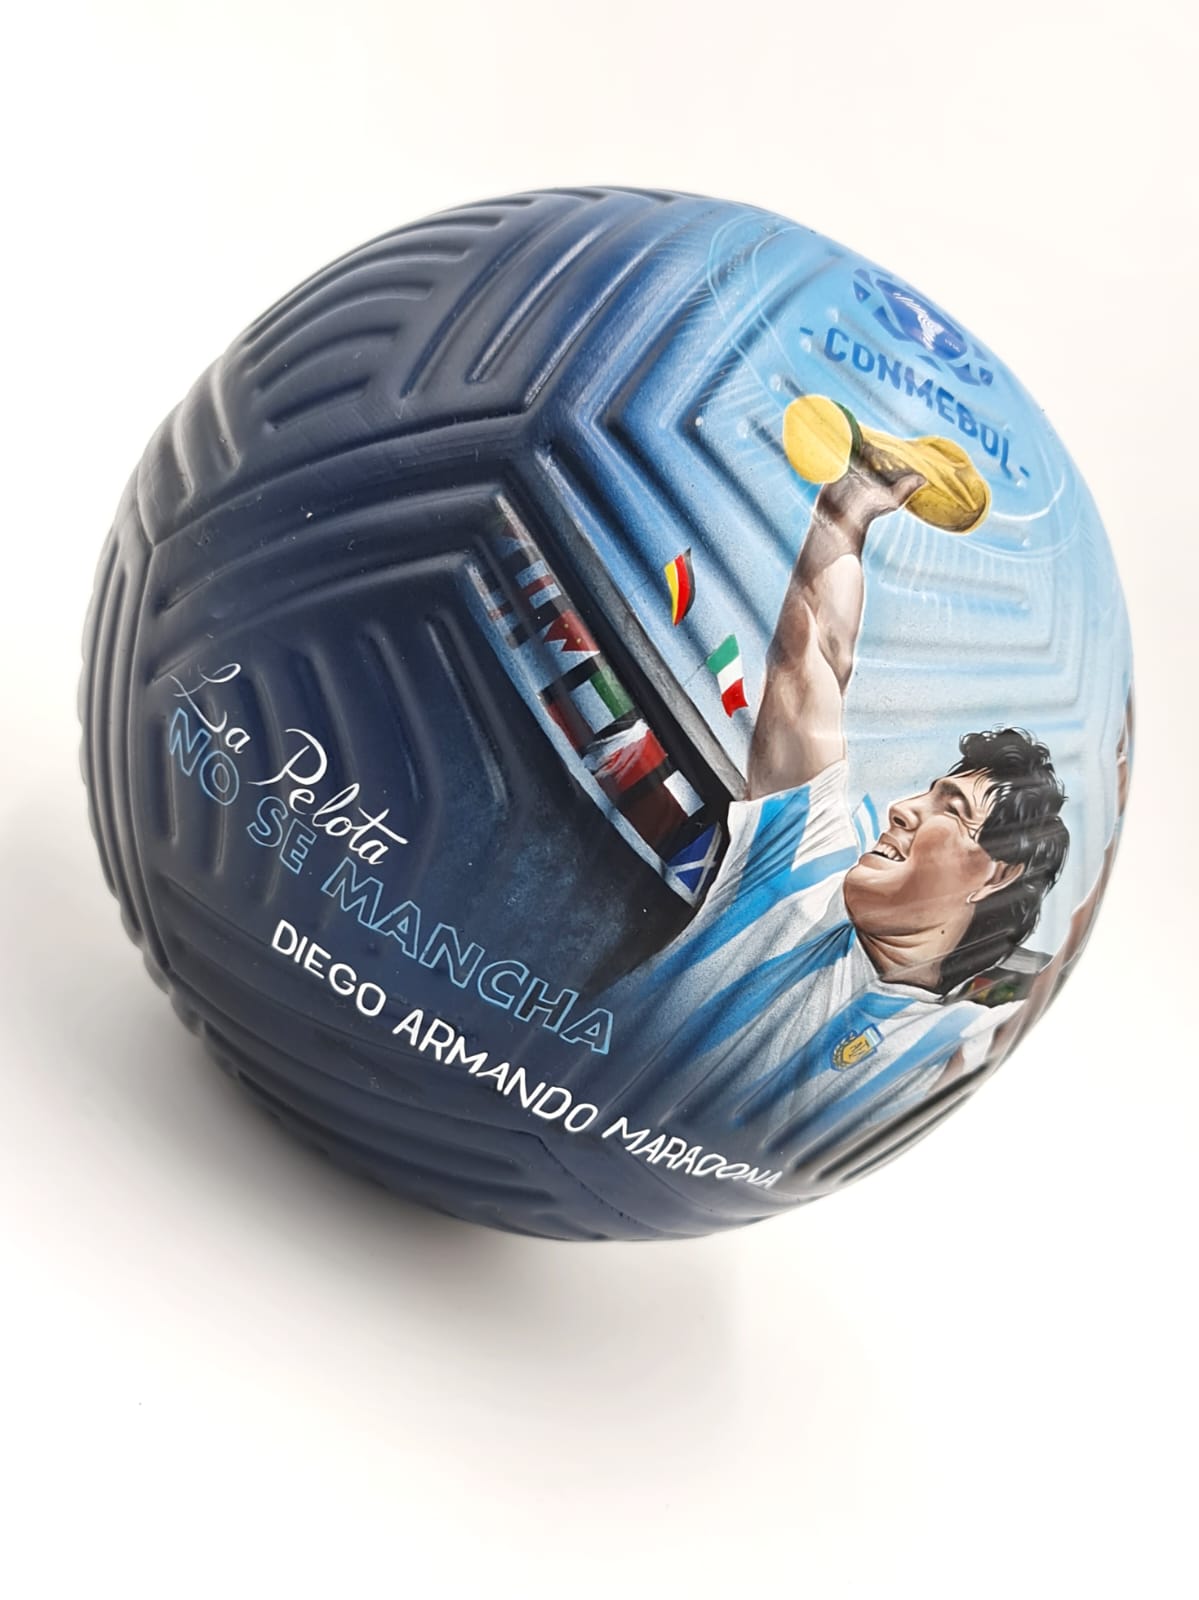 Rostro de Diego Maradona plasmado en el balón